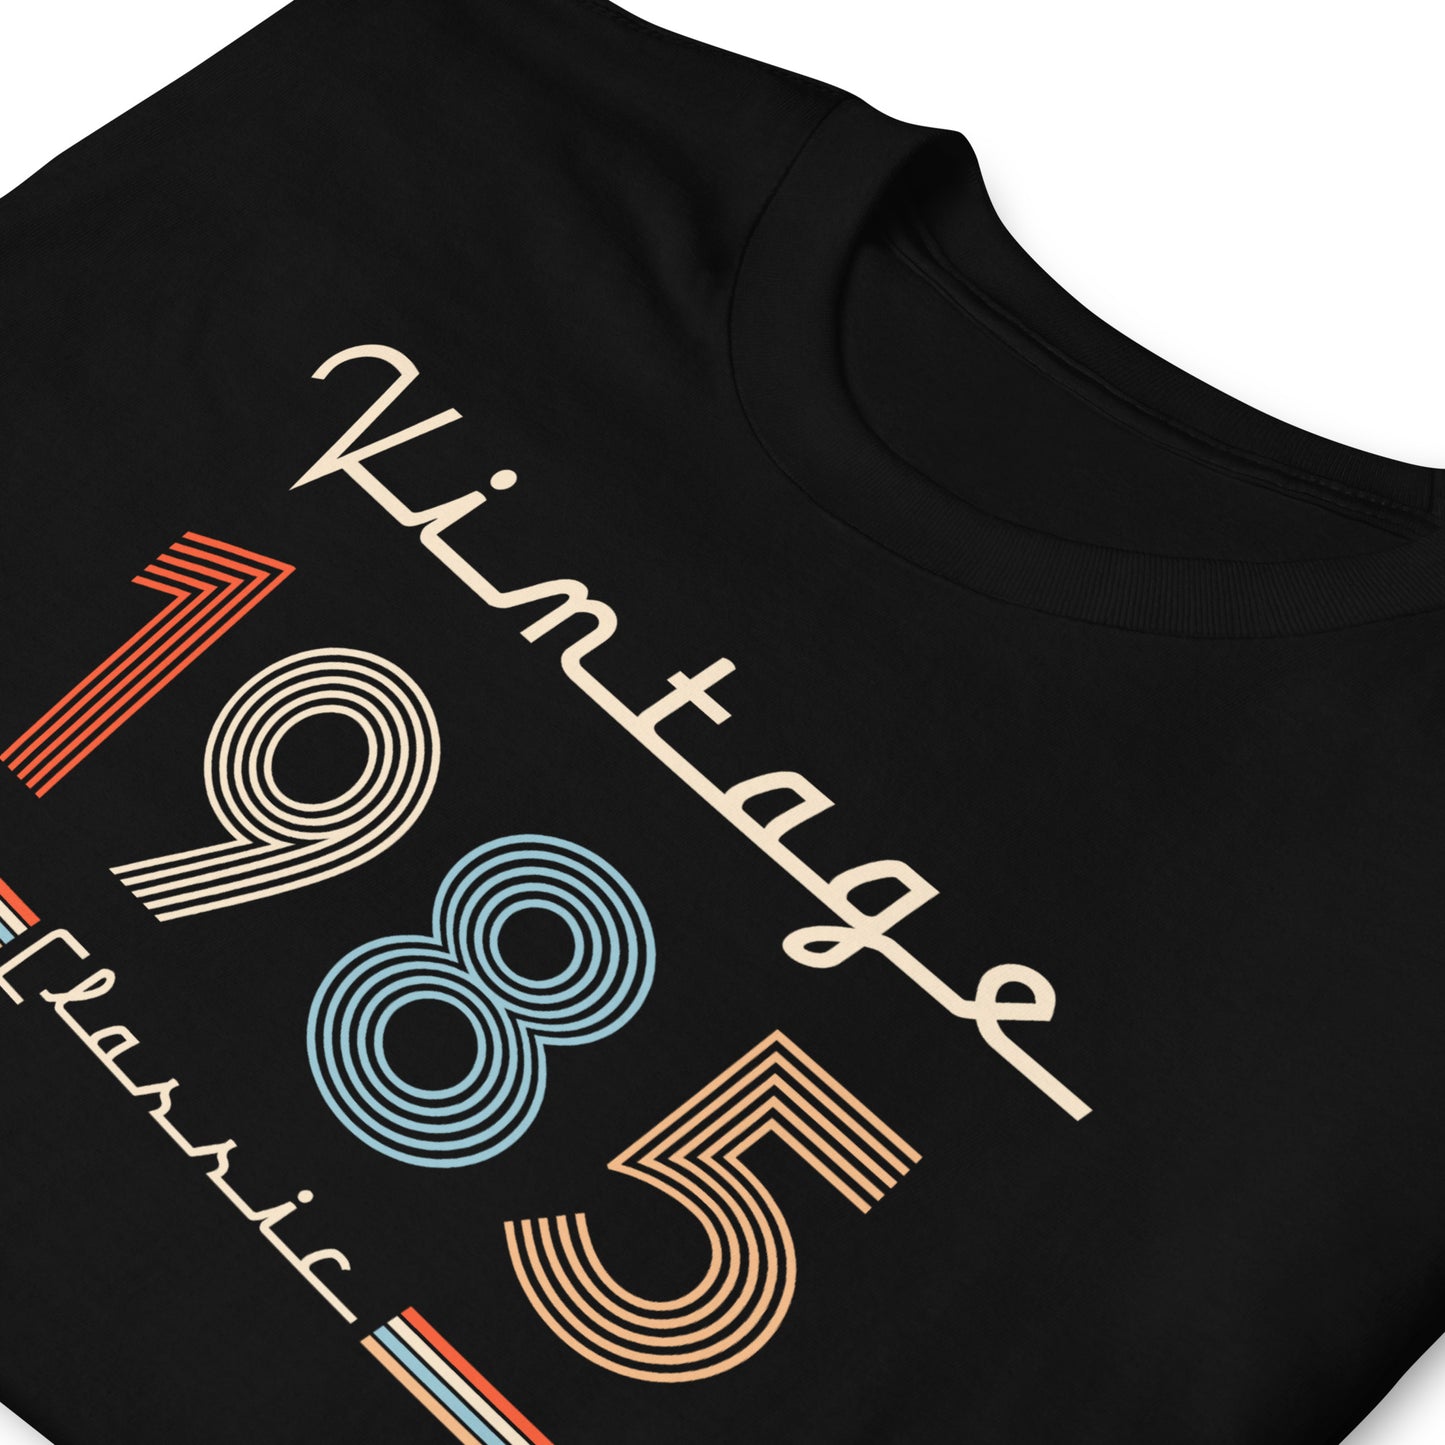 Camiseta 1985 - Vintage Classic - Cumpleaños